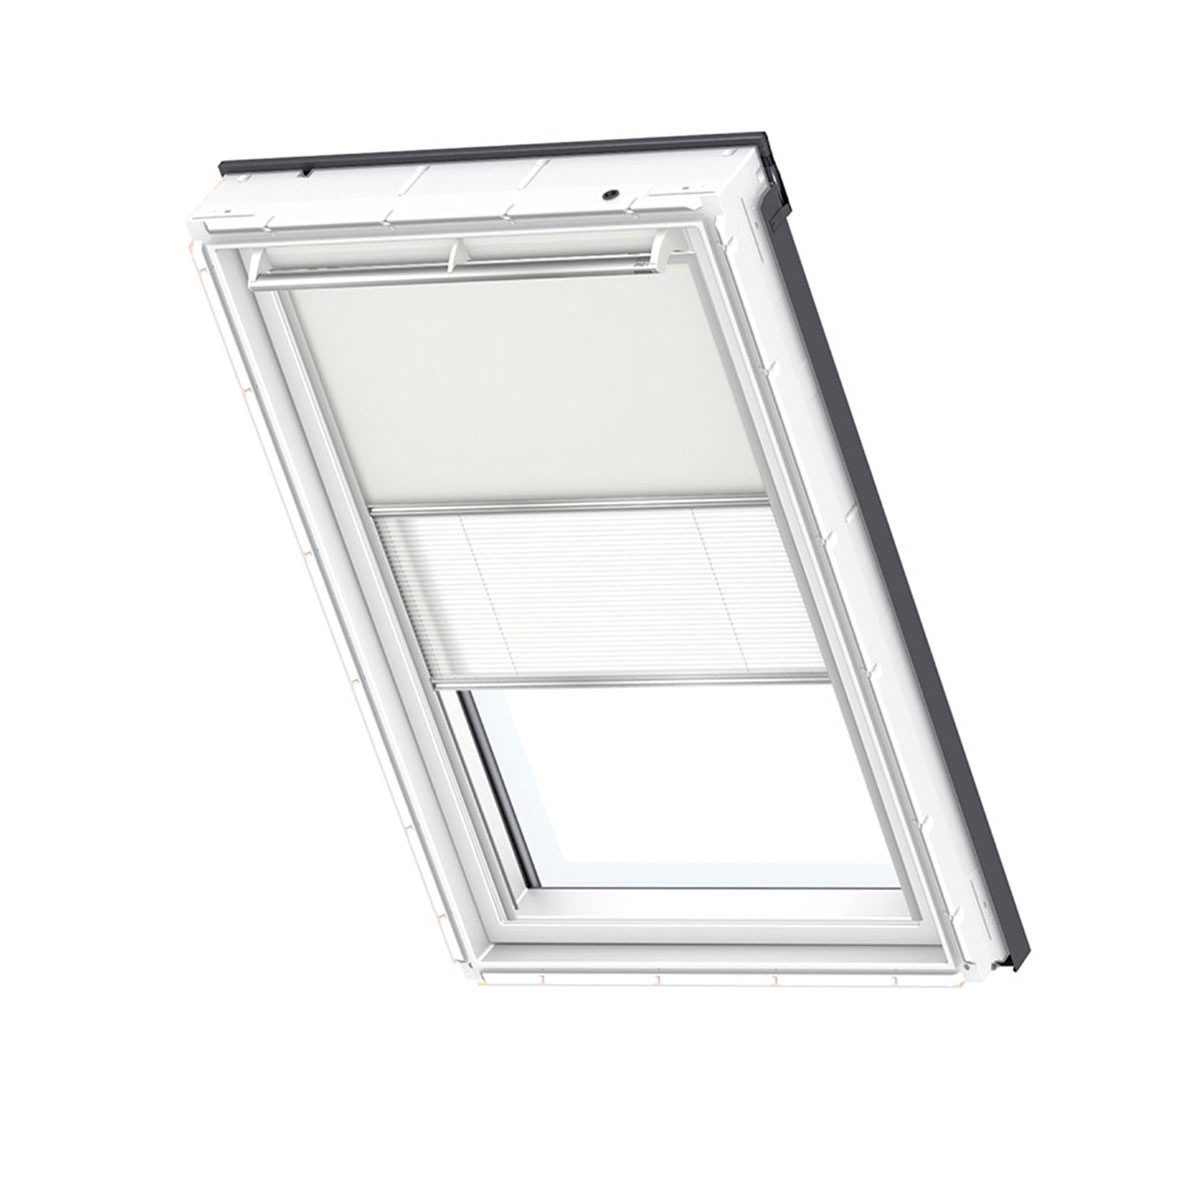 Tenda combinata per finestra da tetto oscurante e filtrante VELUX DFD S01 1085S L 70 x H 114 cm beige - 1